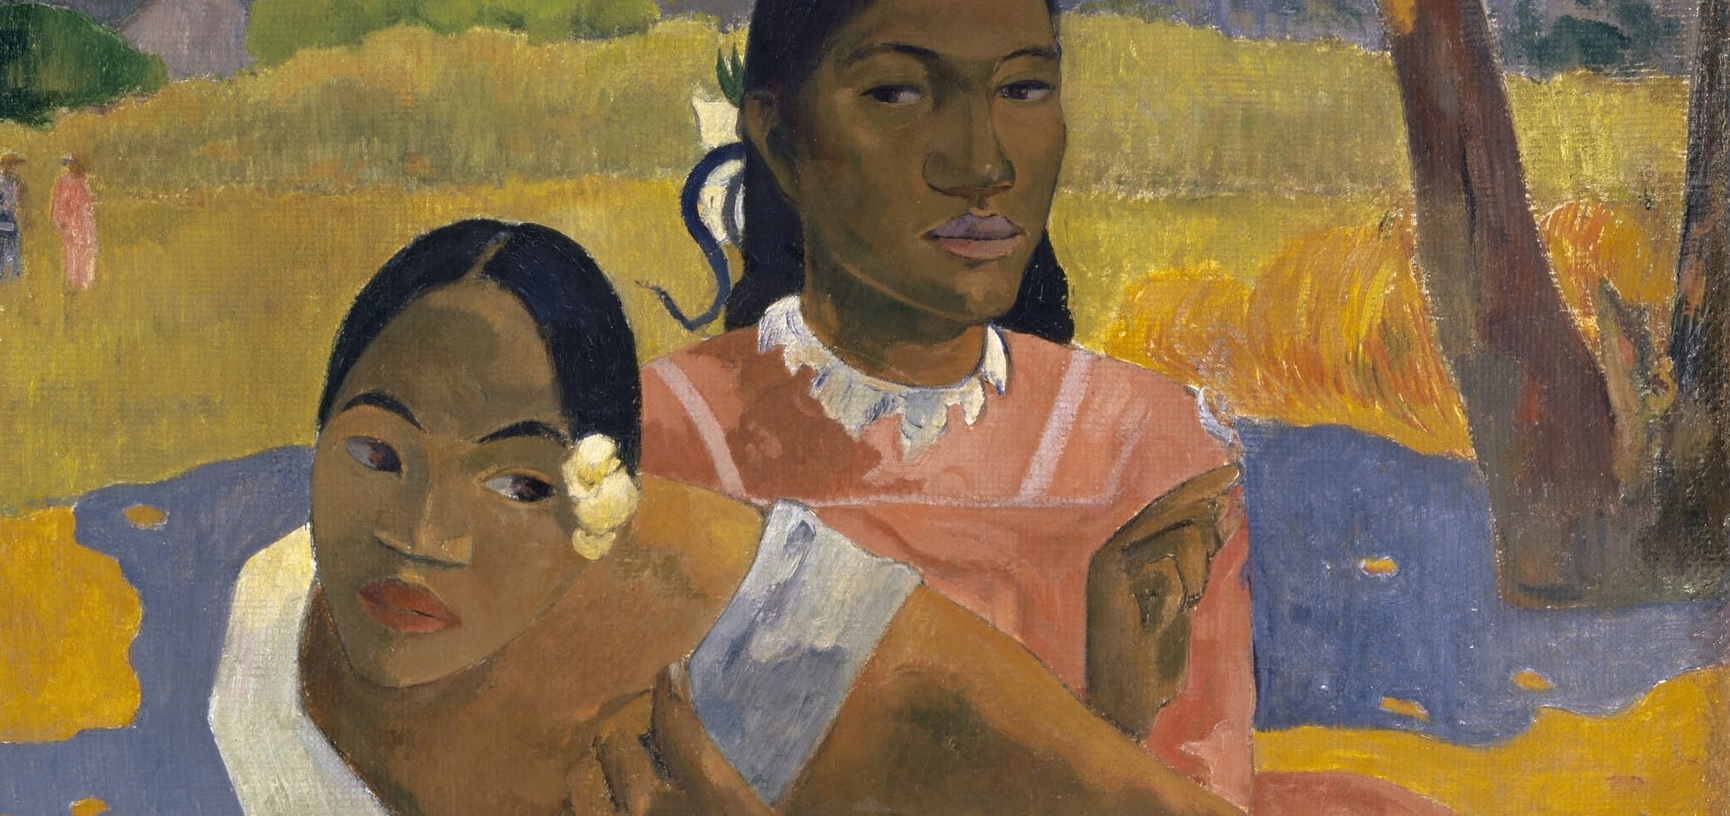 Un 7 de junio de 1848 nace Paul Gauguin